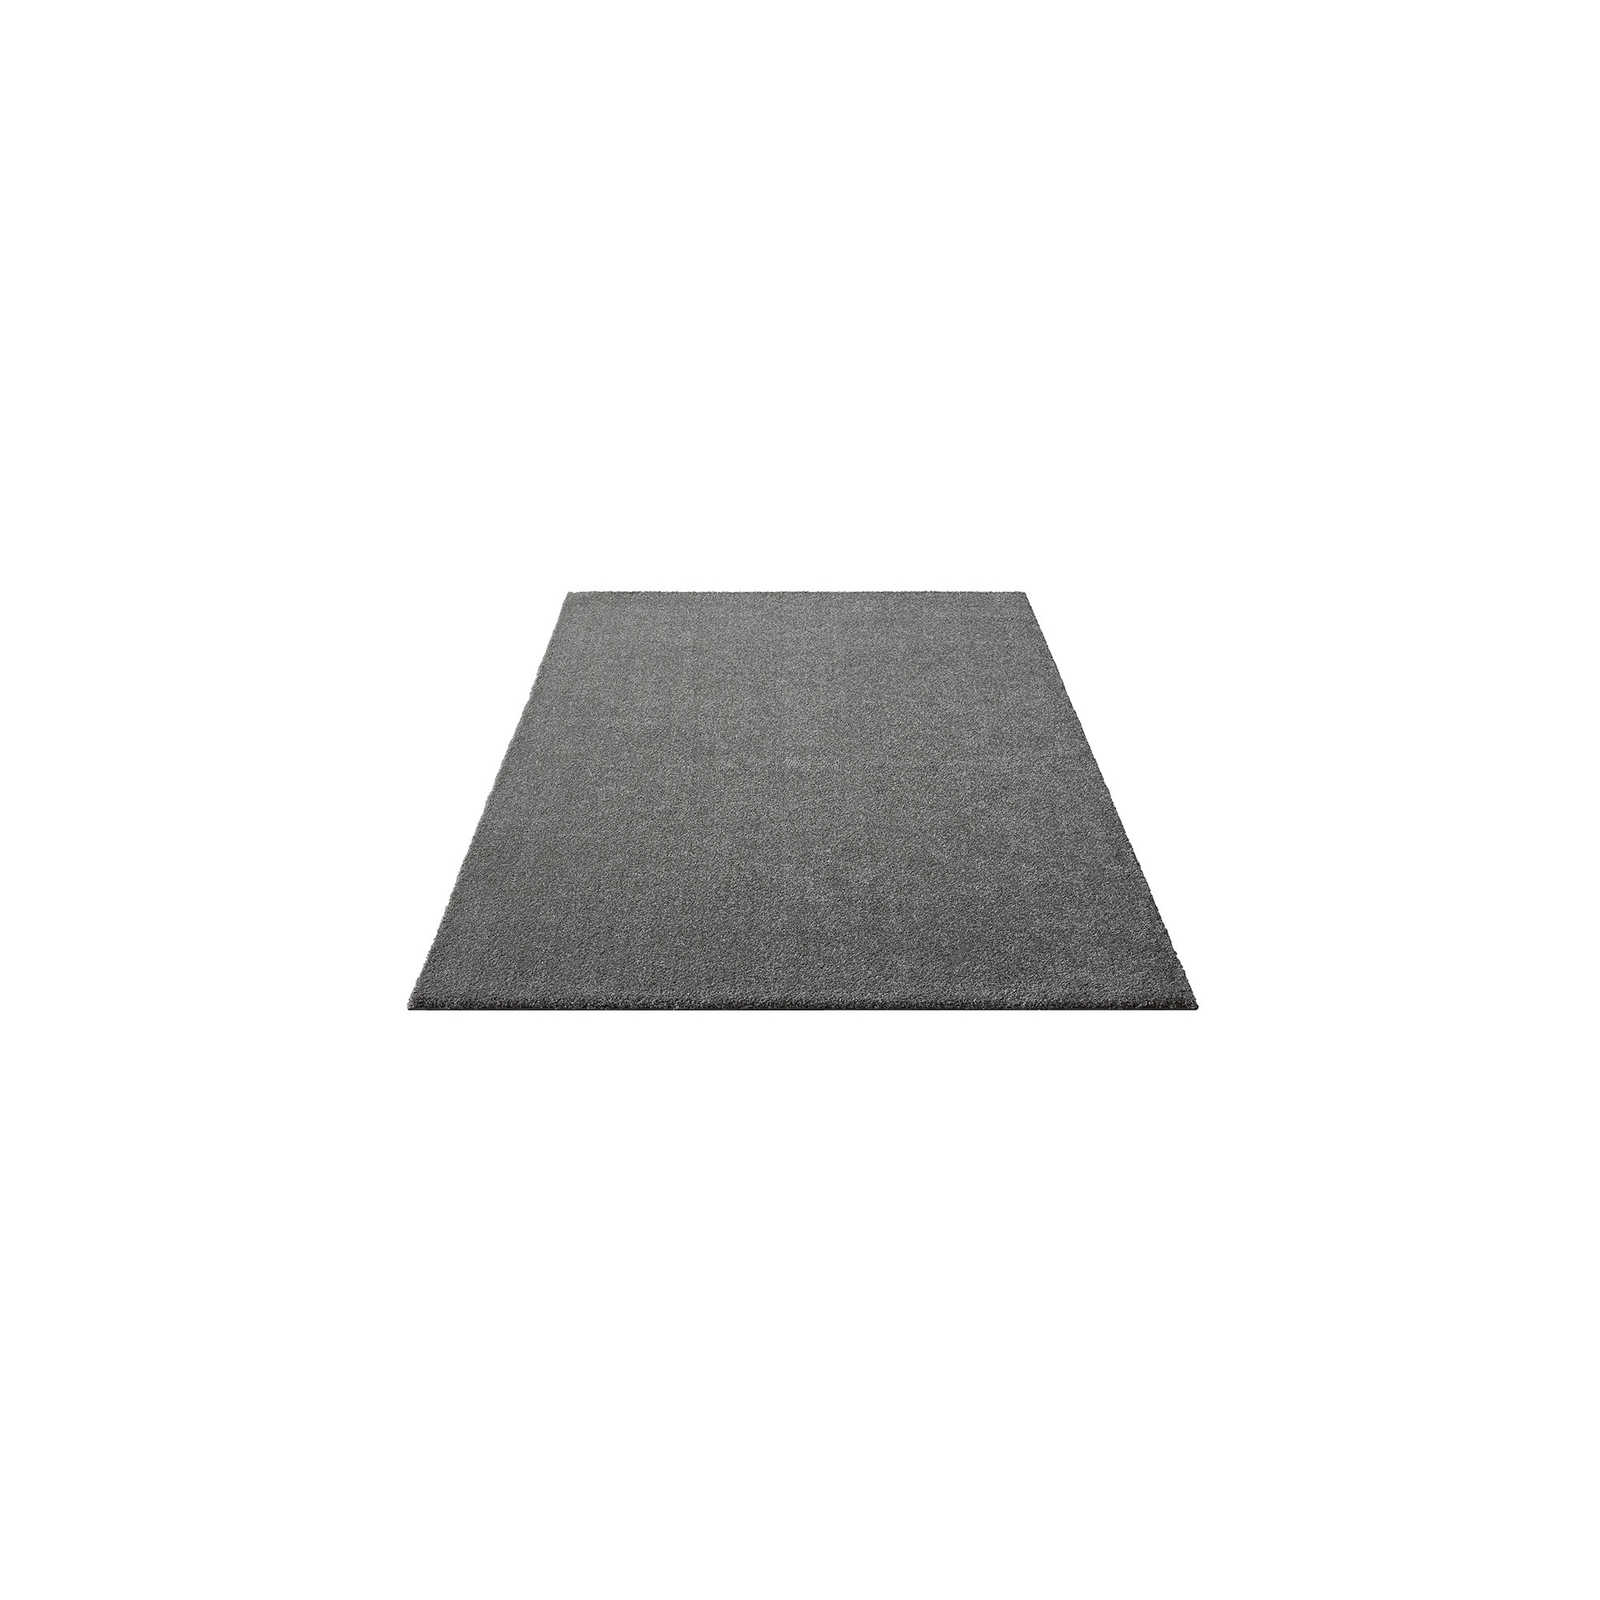 Flauschiger Kurzflor Teppich in Grau – 150 x 80 cm
